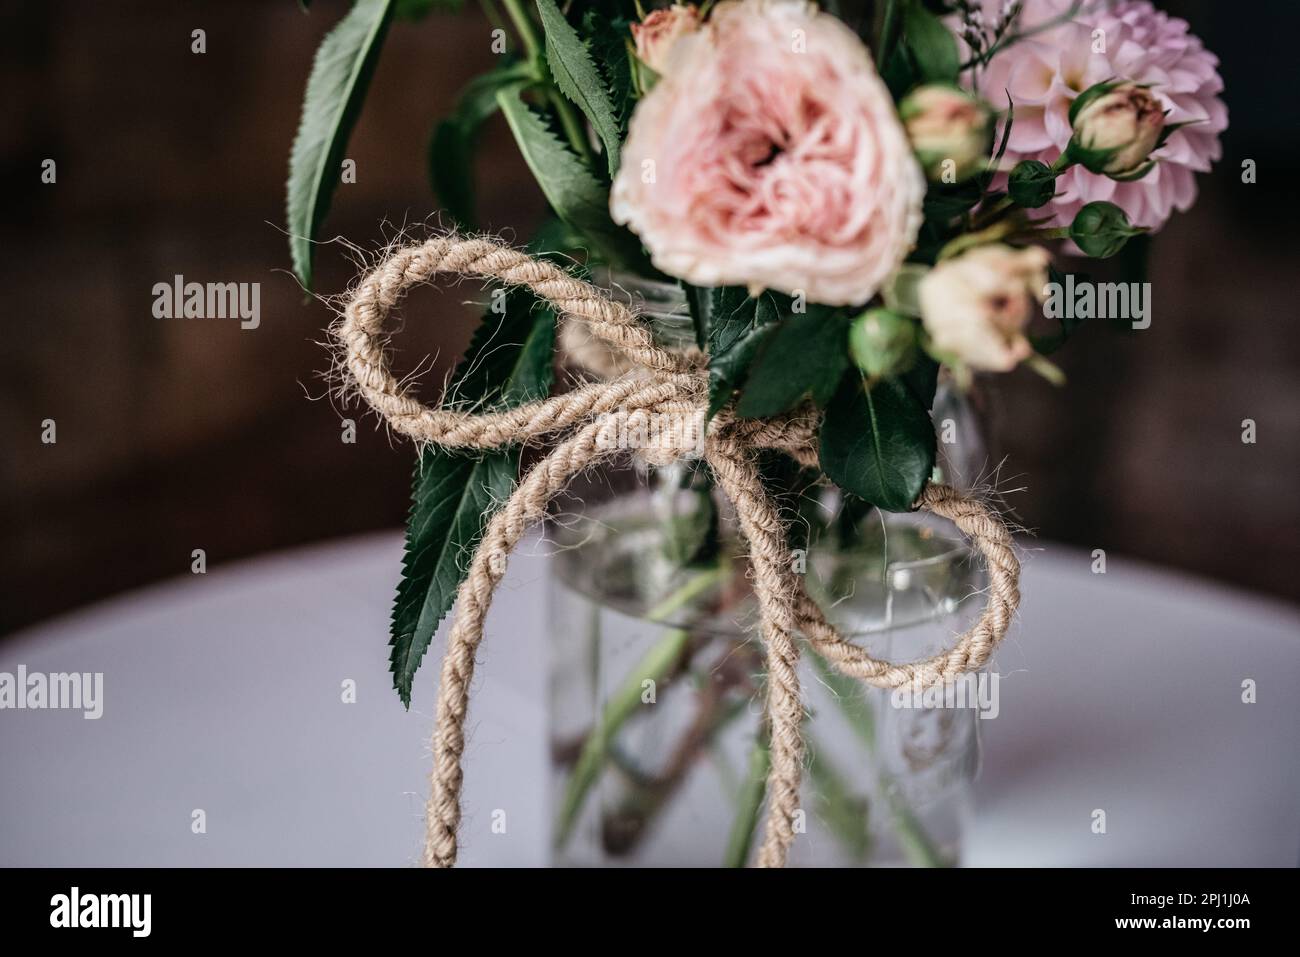 Un arrangement de fleurs vibrantes dans un petit vase en verre, orné de ficelle de jute, ce qui fait un bel étalage Banque D'Images